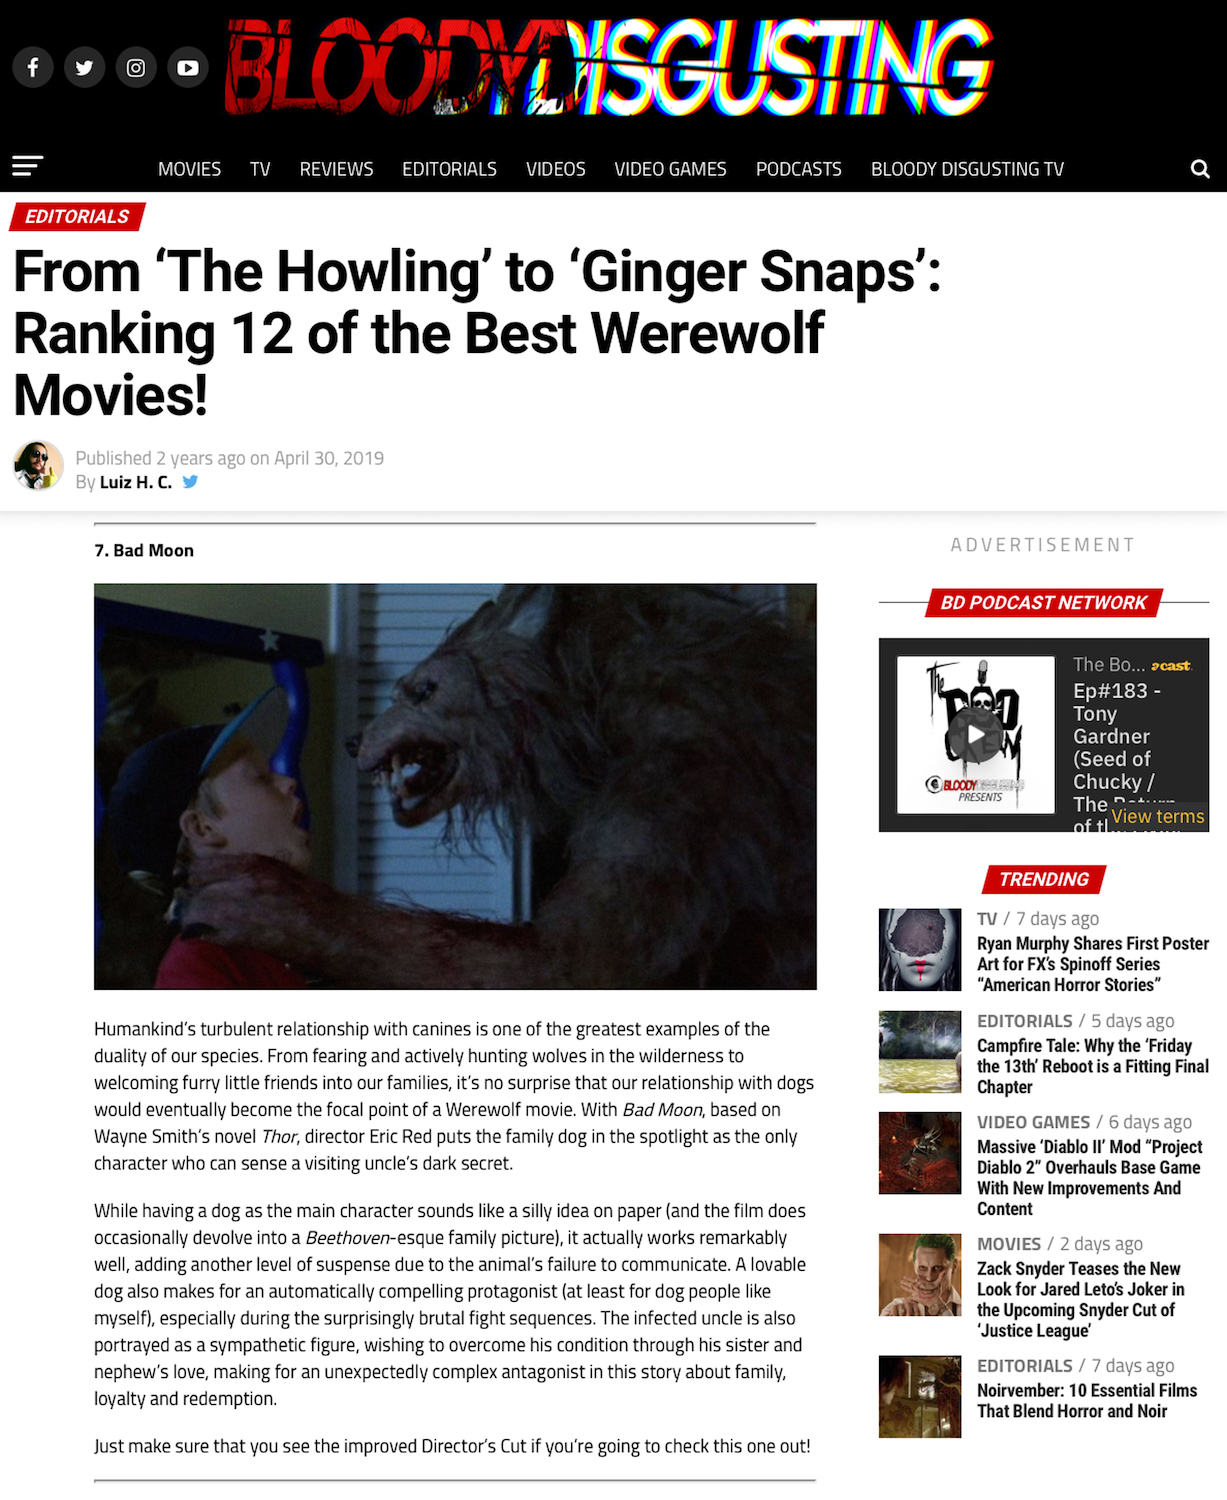 BAD MOON Bloody Disgusting 12 Best Werewolf Movies